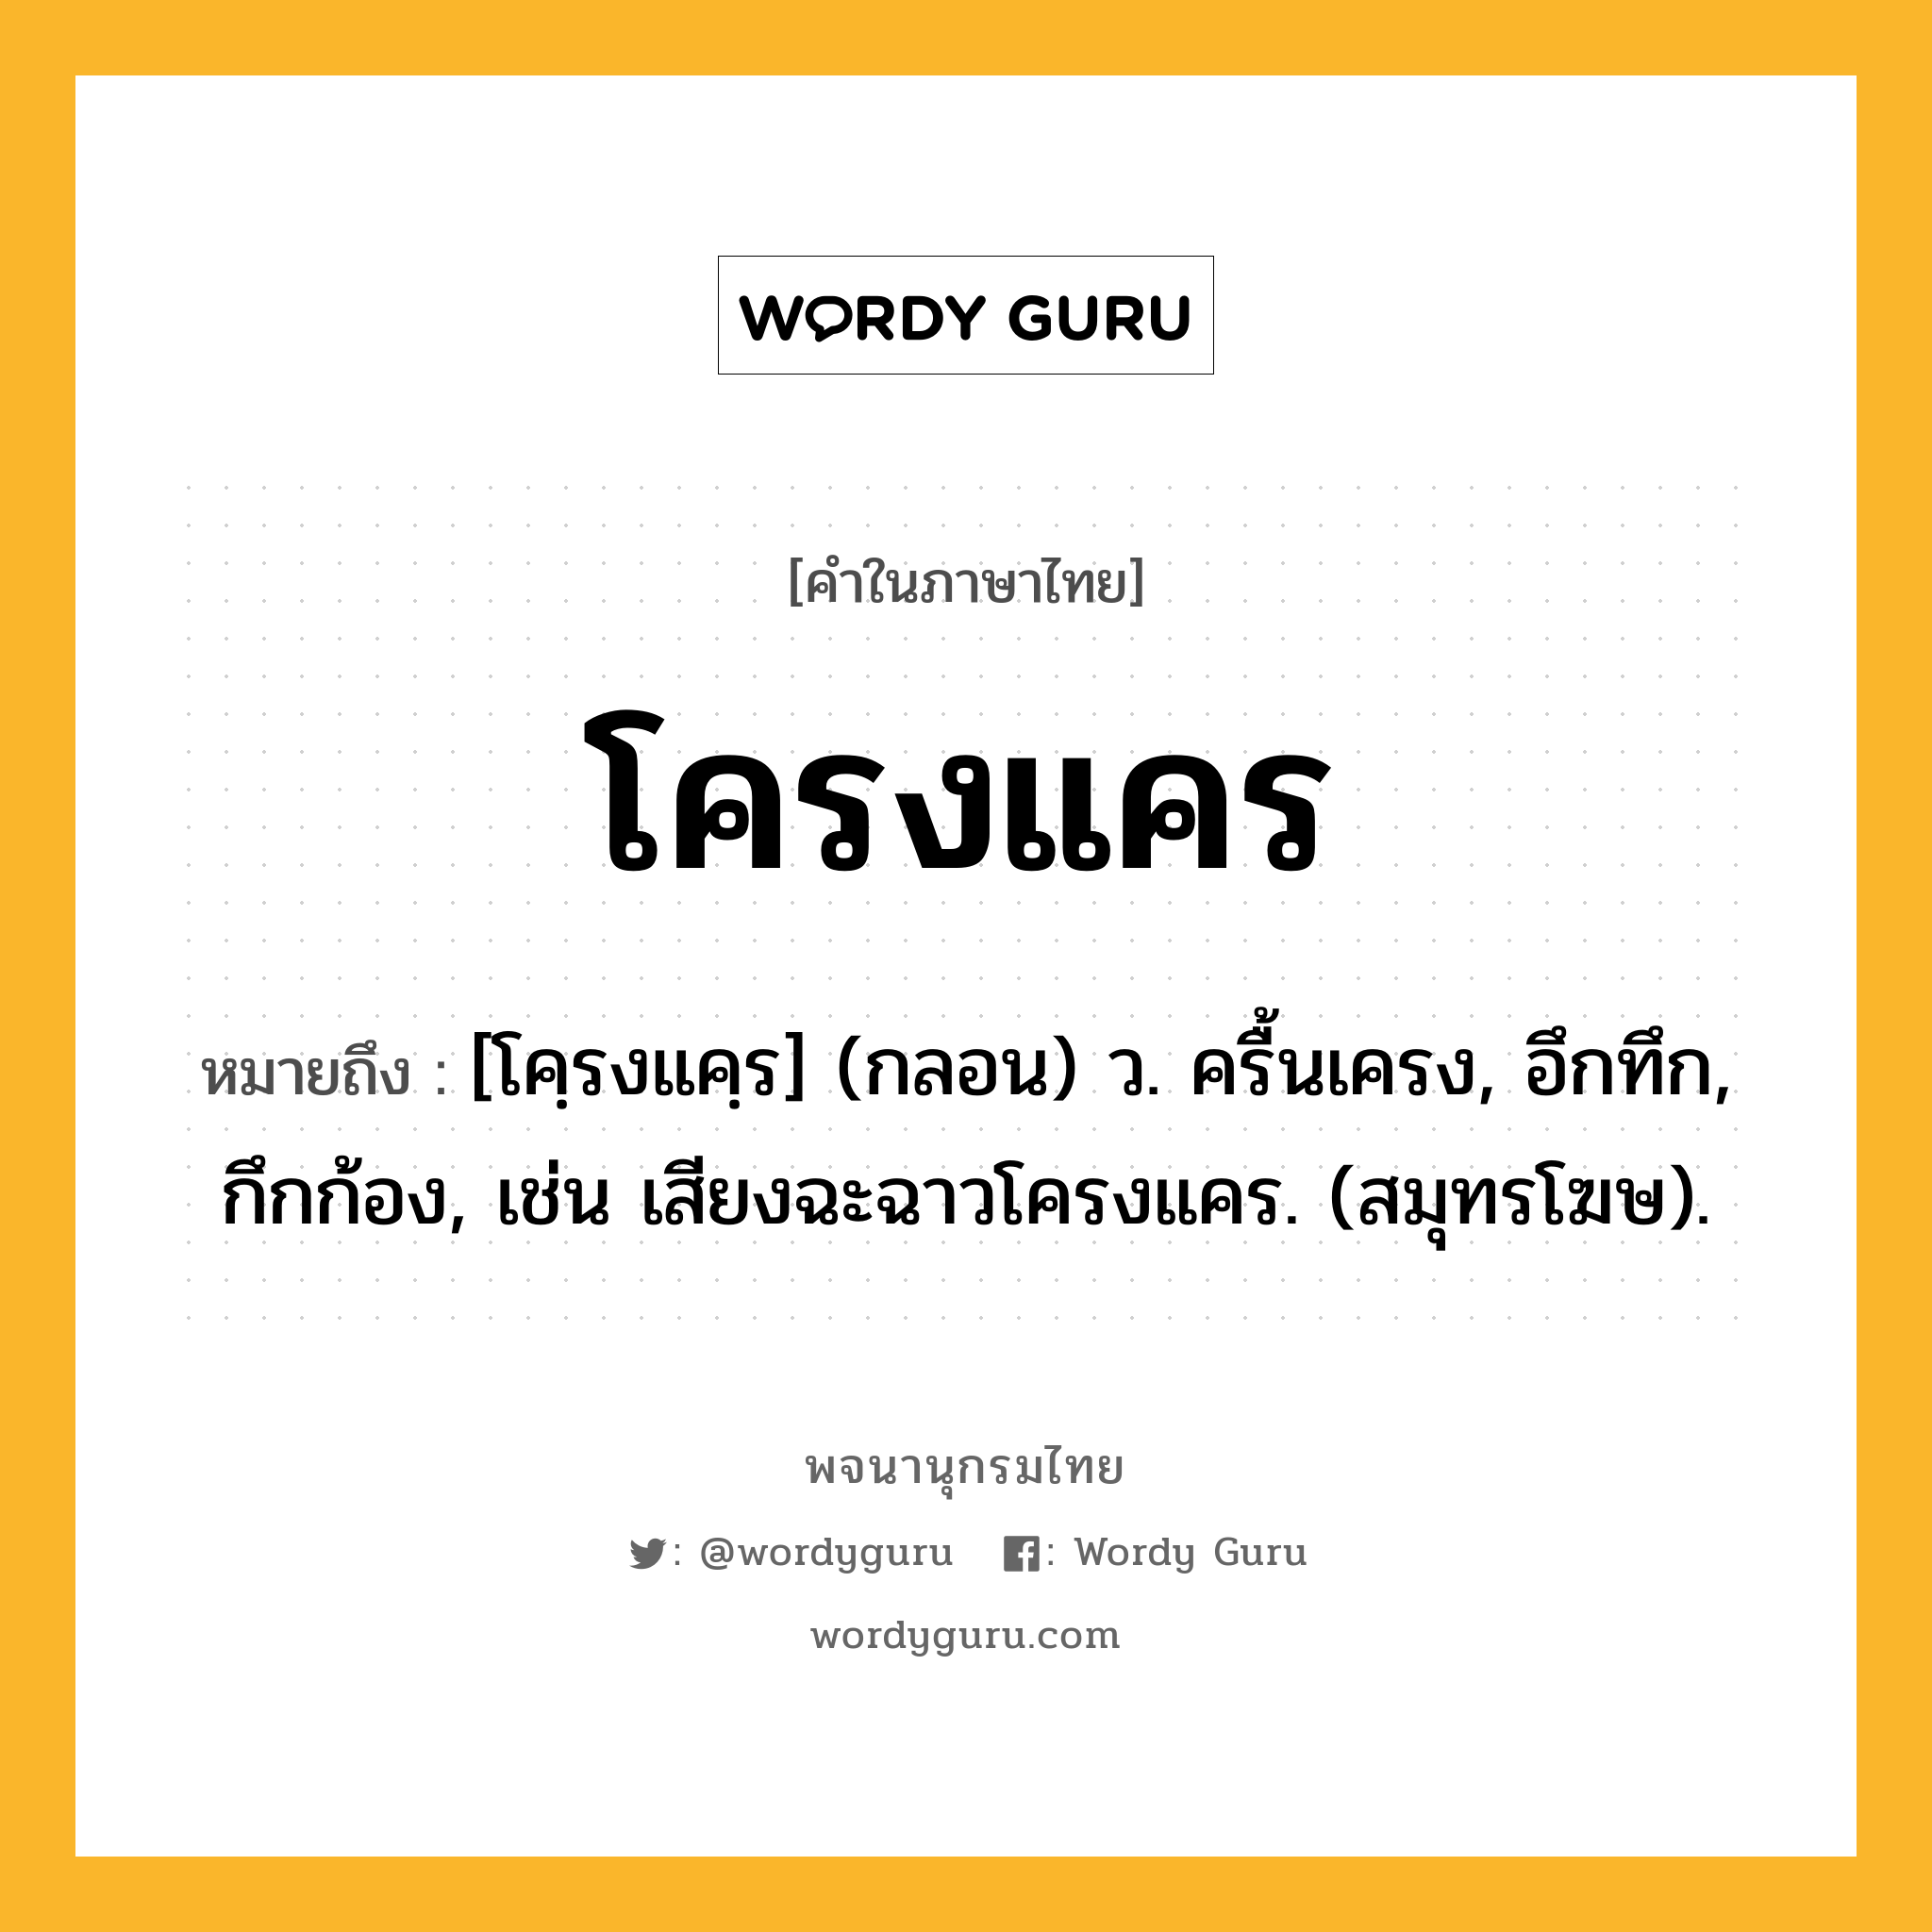 โครงแคร หมายถึงอะไร?, คำในภาษาไทย โครงแคร หมายถึง [โคฺรงแคฺร] (กลอน) ว. ครื้นเครง, อึกทึก, กึกก้อง, เช่น เสียงฉะฉาวโครงแคร. (สมุทรโฆษ).